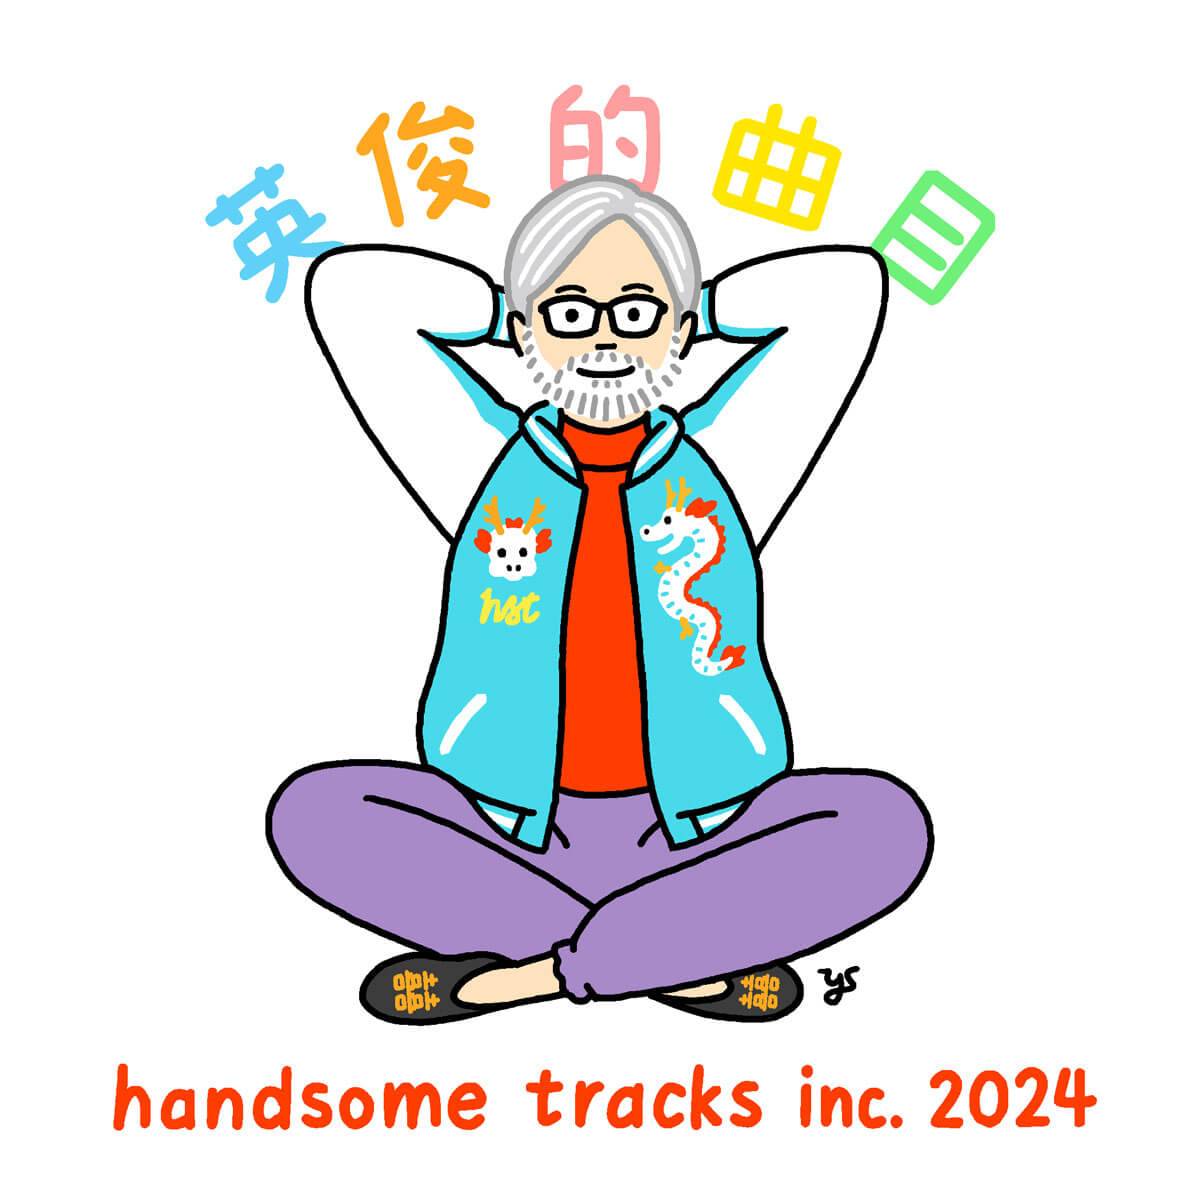 handsome tracks logo